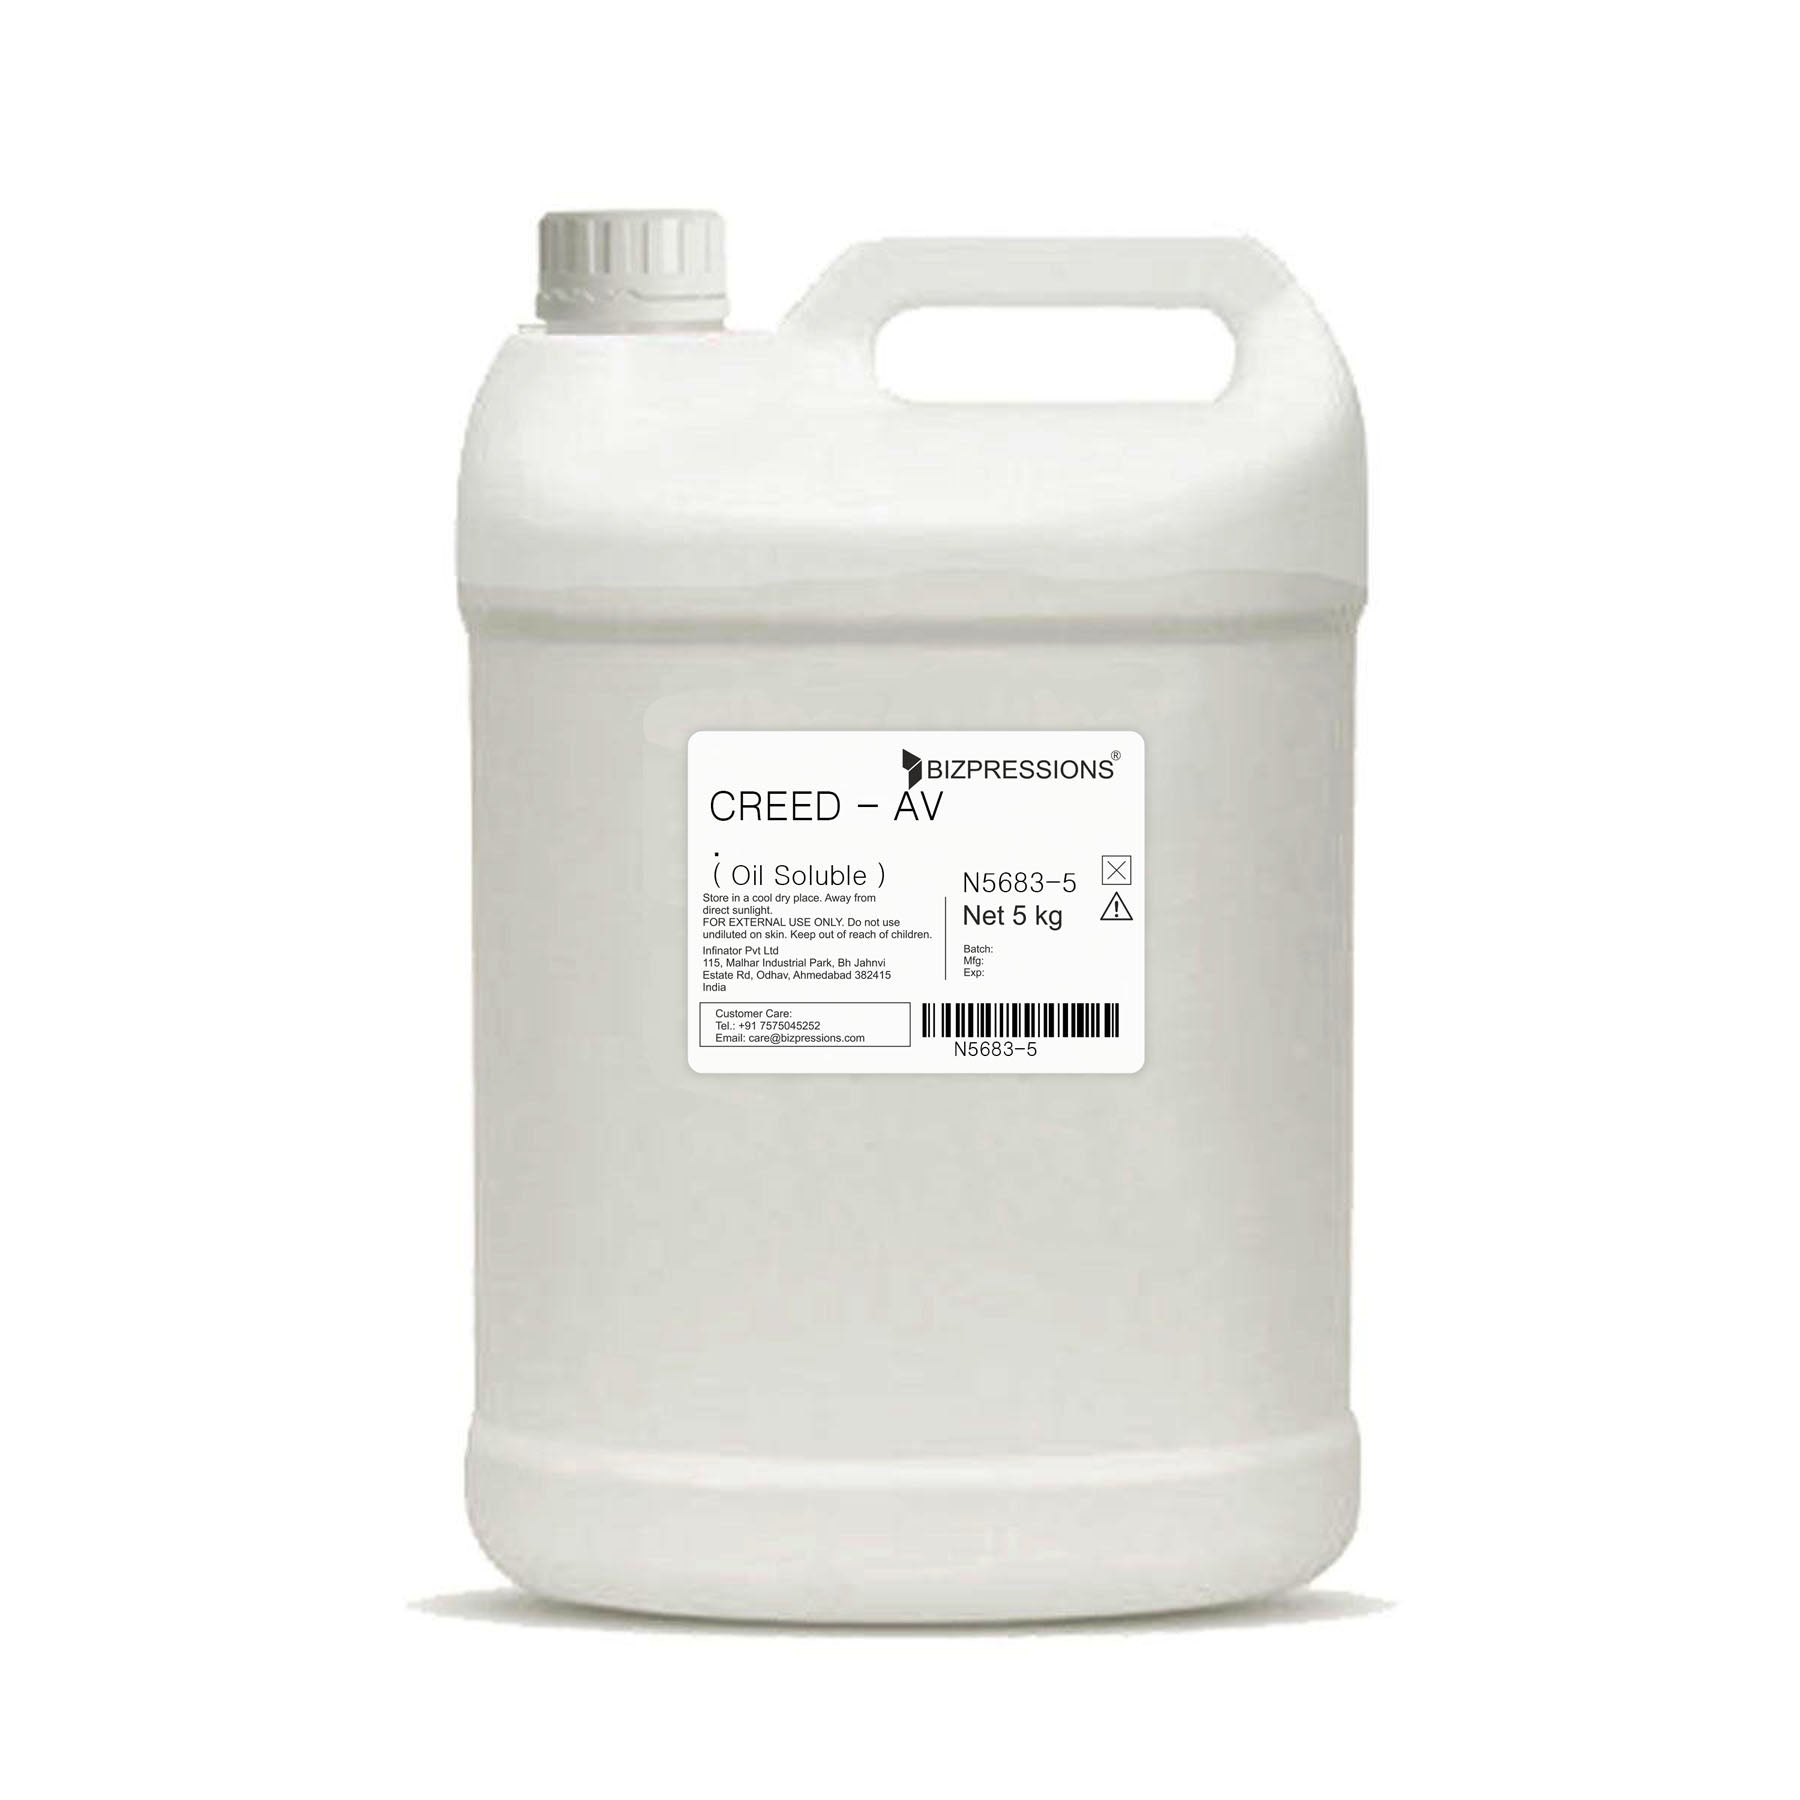 CREED - AV - Fragrance ( Oil Soluble ) - 5 kg